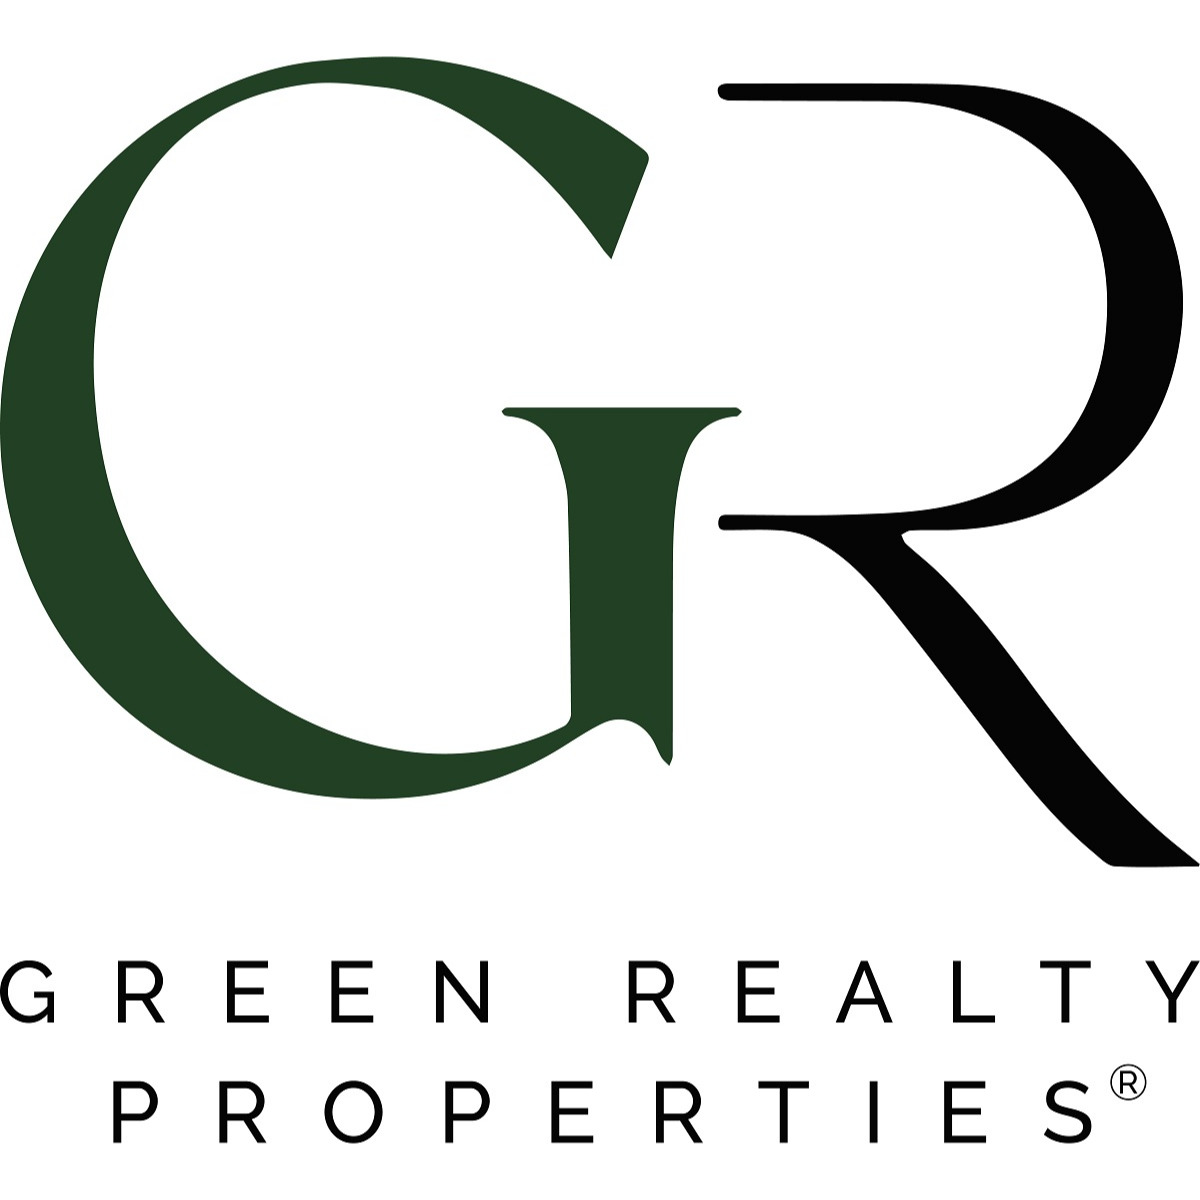 Patty Da Silva Broker at Green Realty Properties - Cooper City, FL 33024 - (954)667-7253 | ShowMeLocal.com